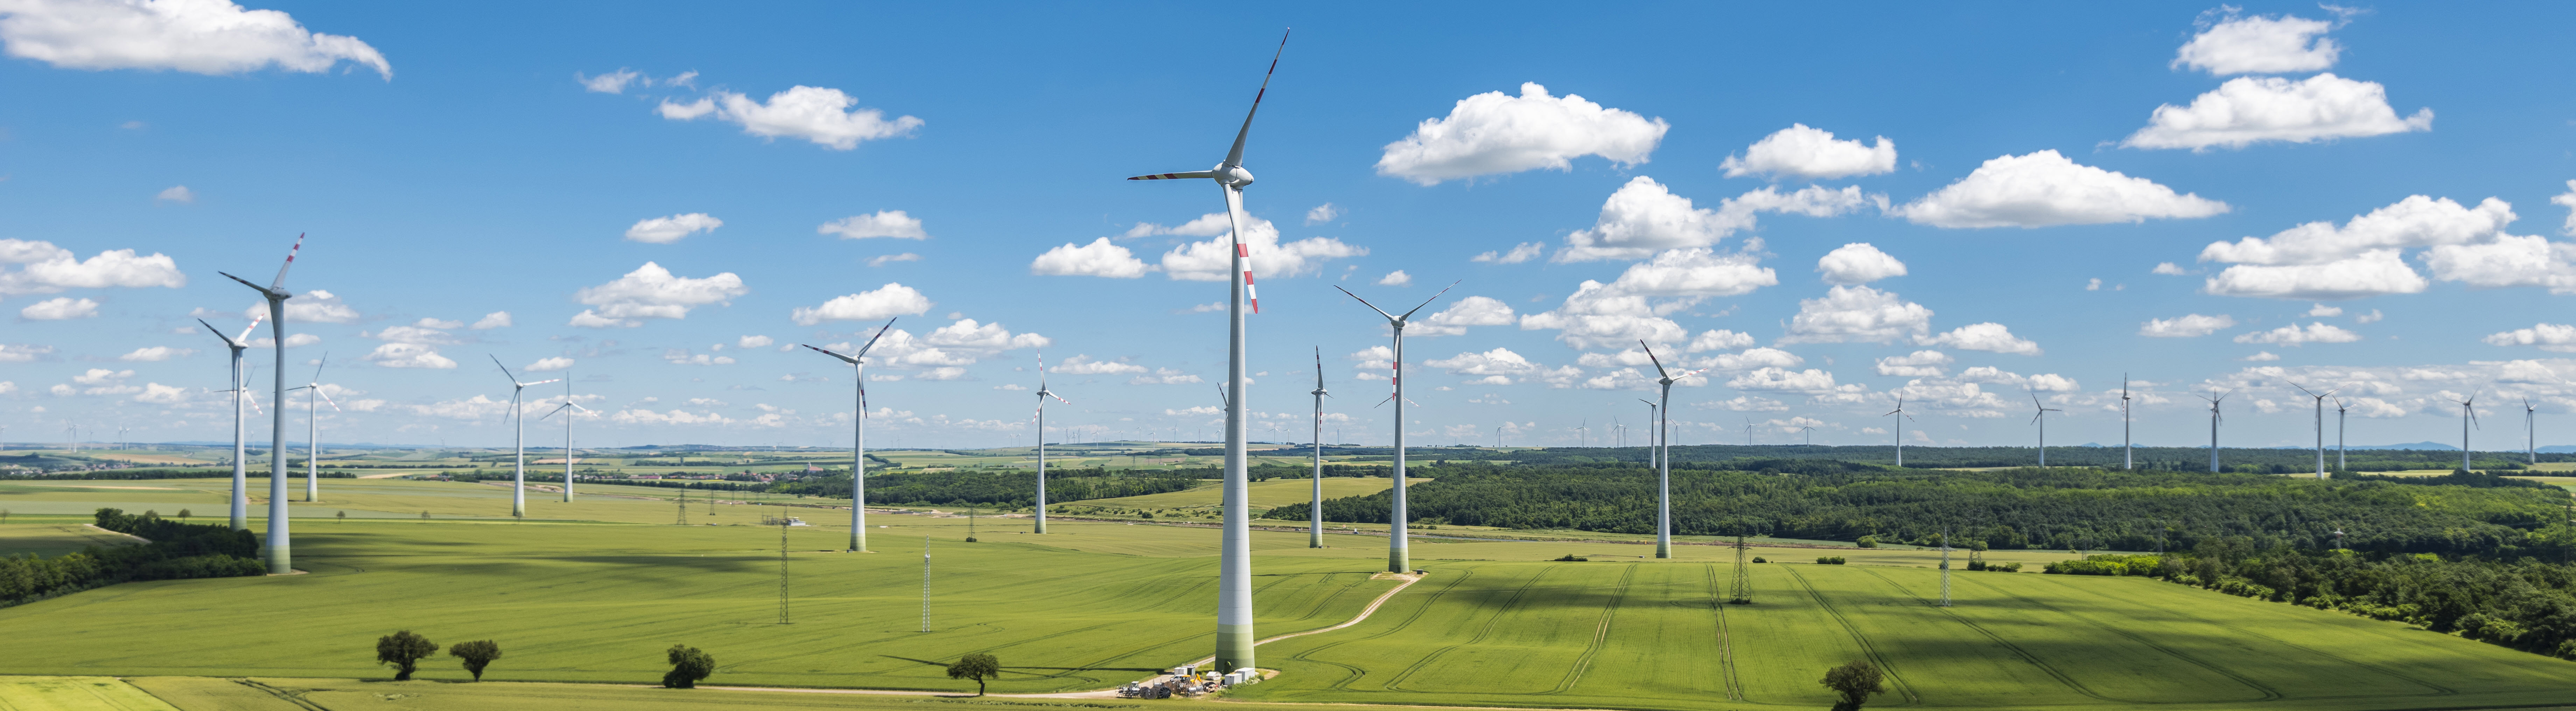 Windkraftanlagen im Windpark © iStock.com